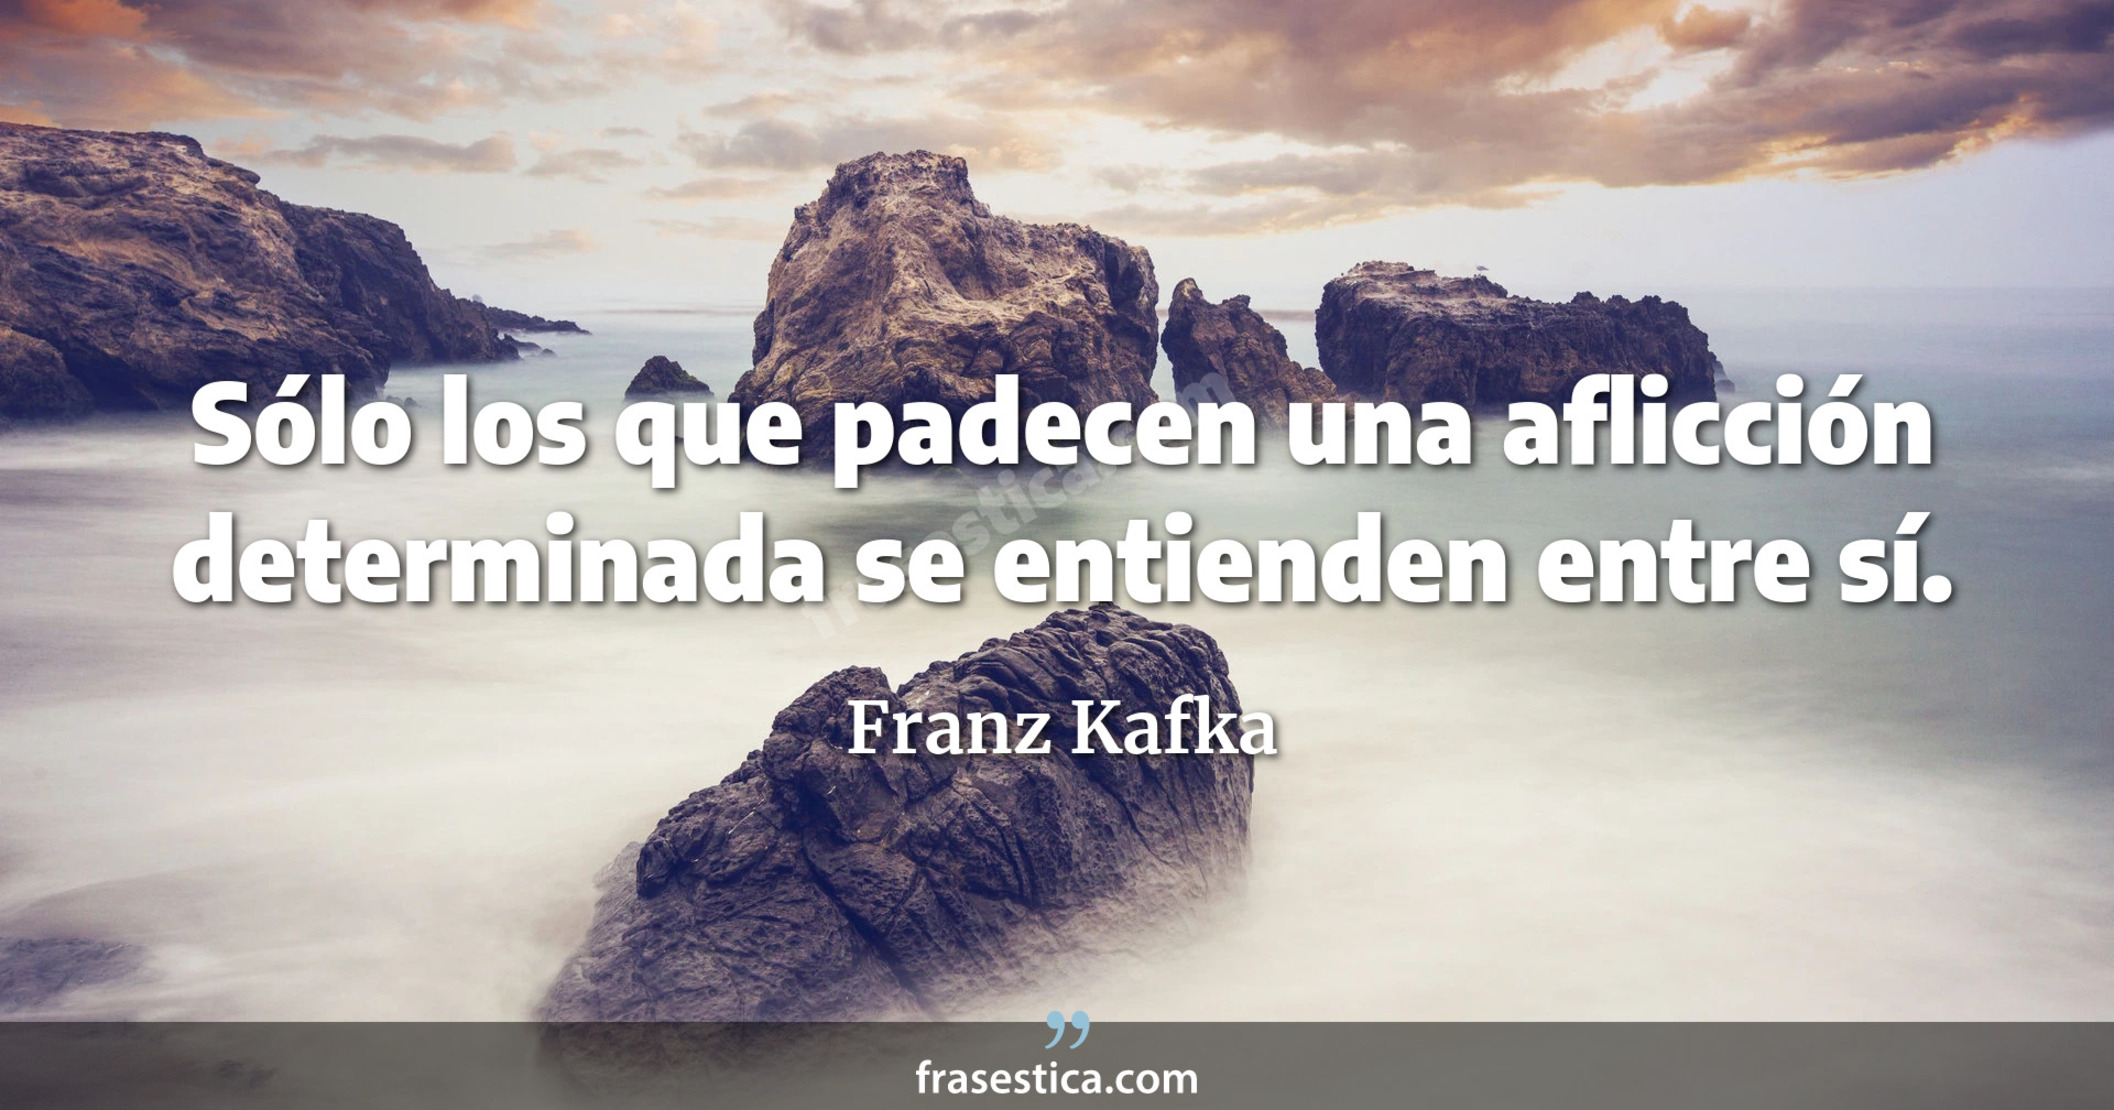 Sólo los que padecen una aflicción determinada se entienden entre sí. - Franz Kafka